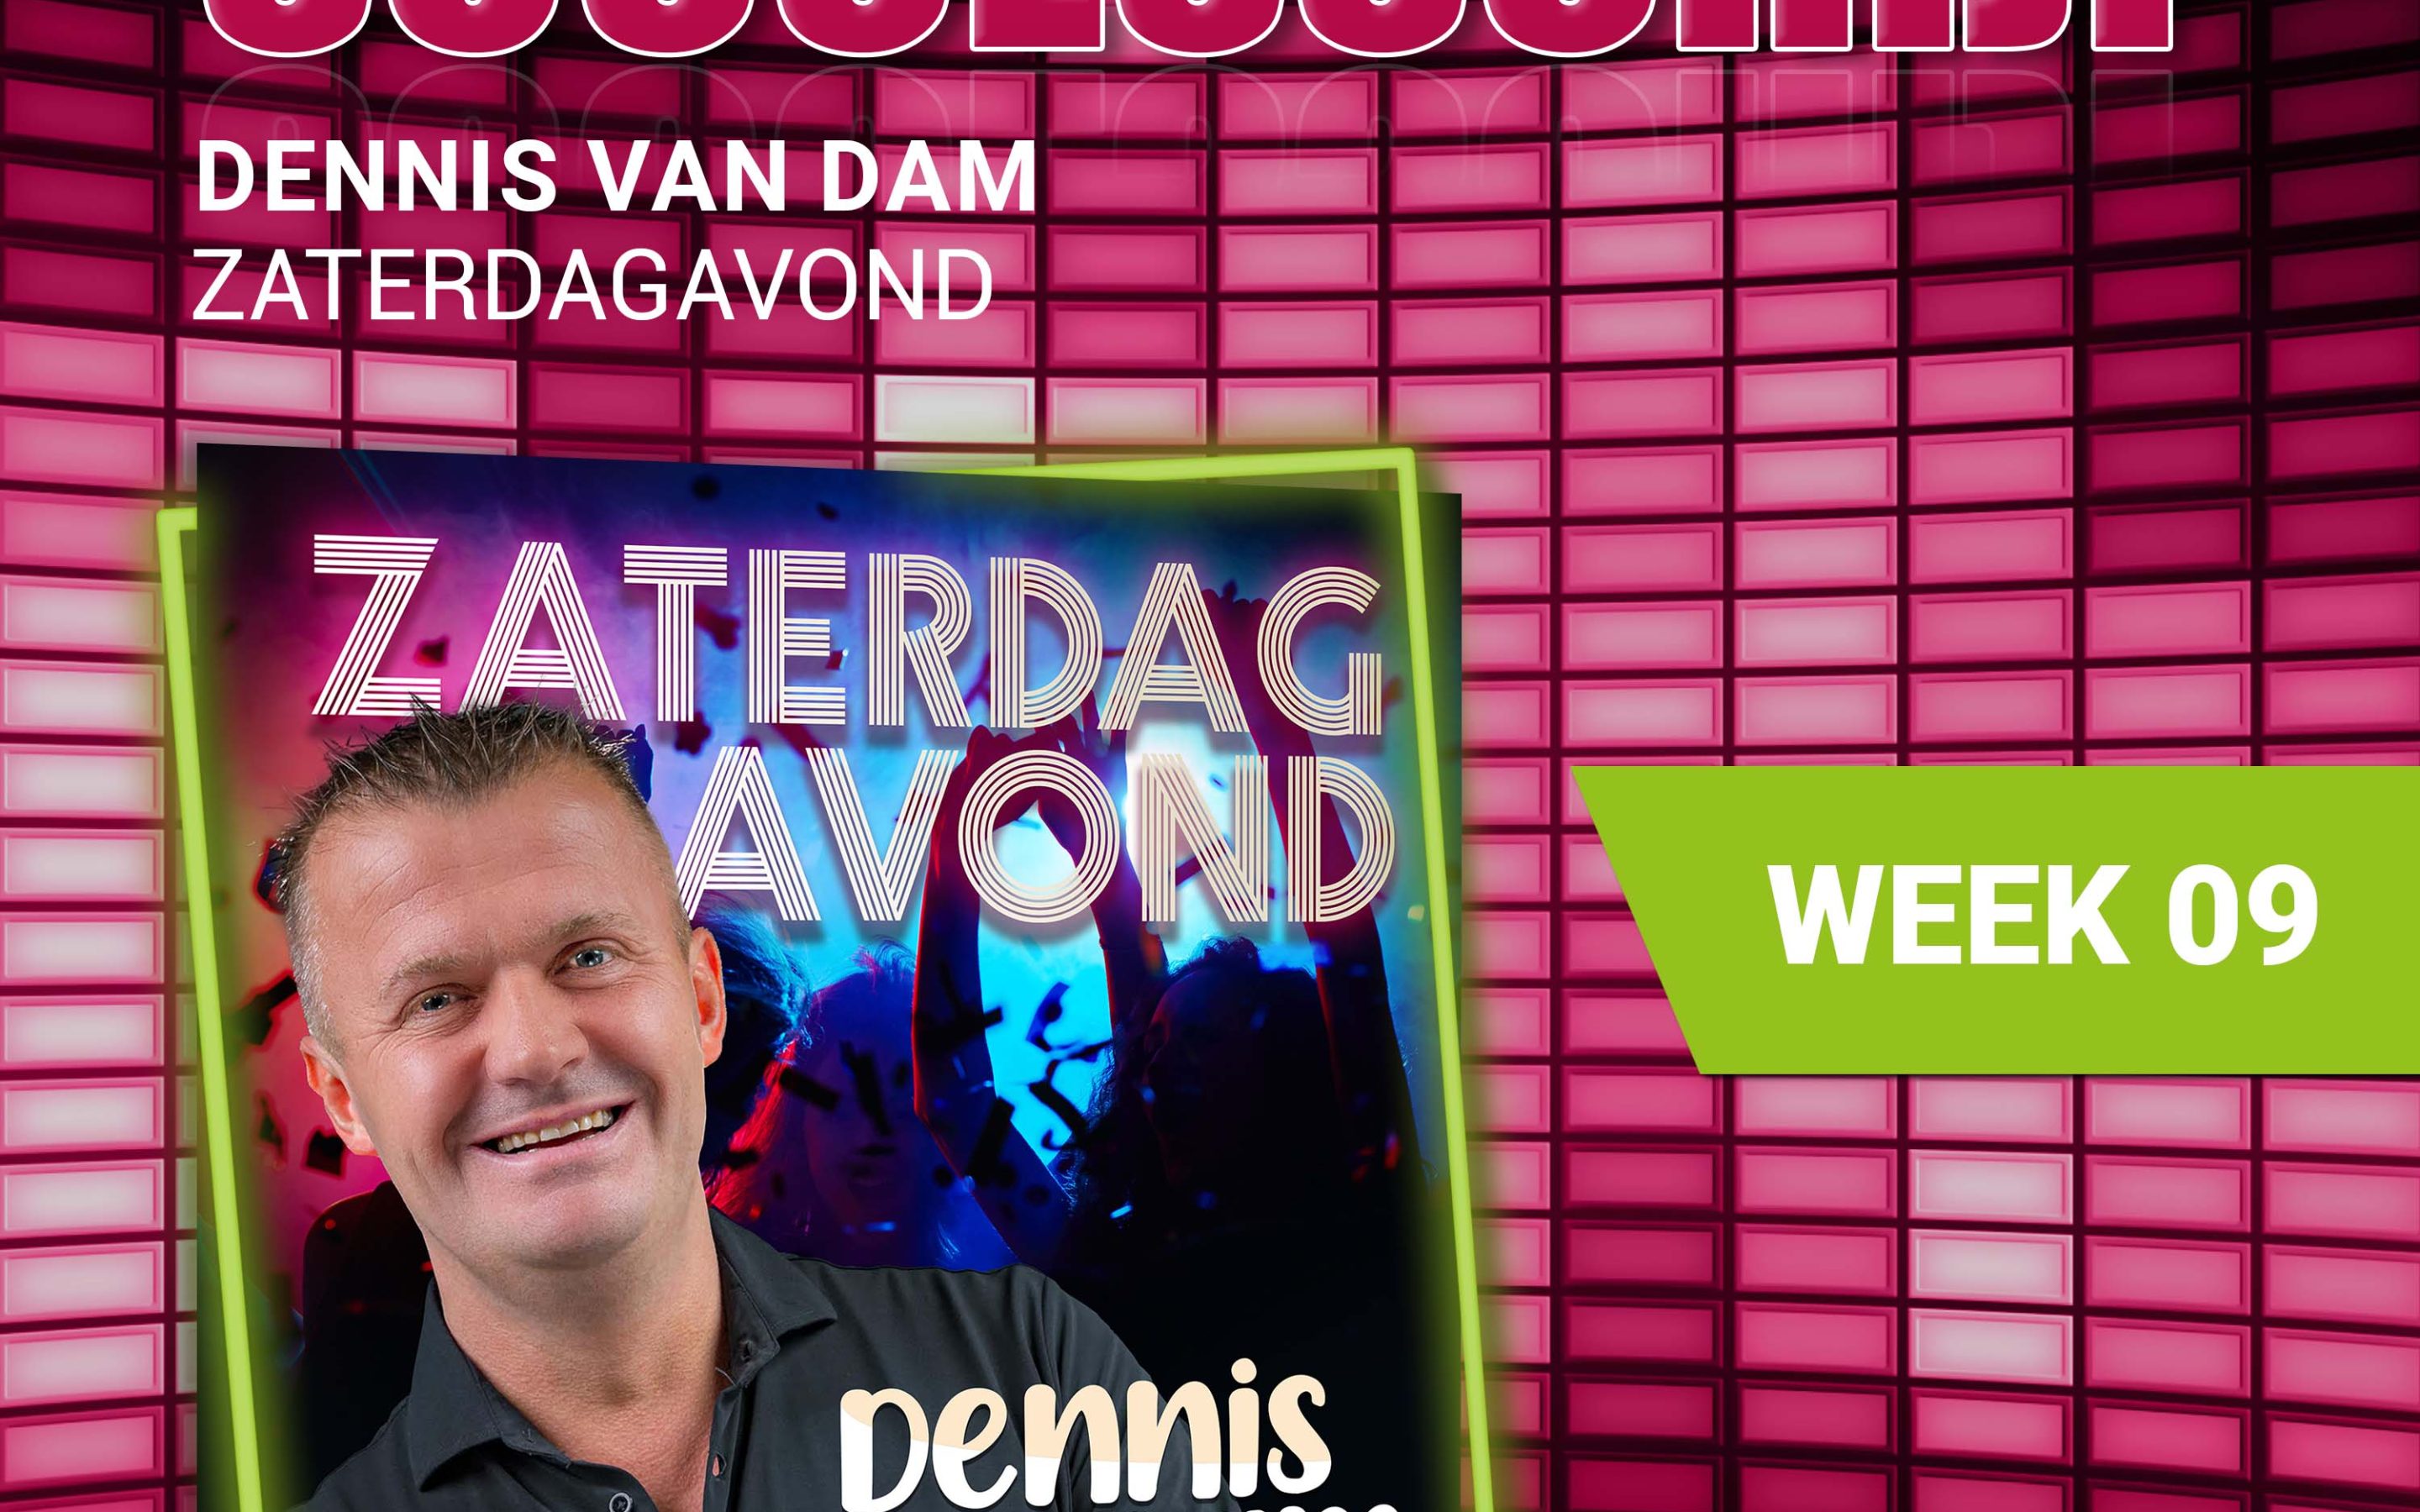 Dennis van Dam – nieuwe successchijf week 9